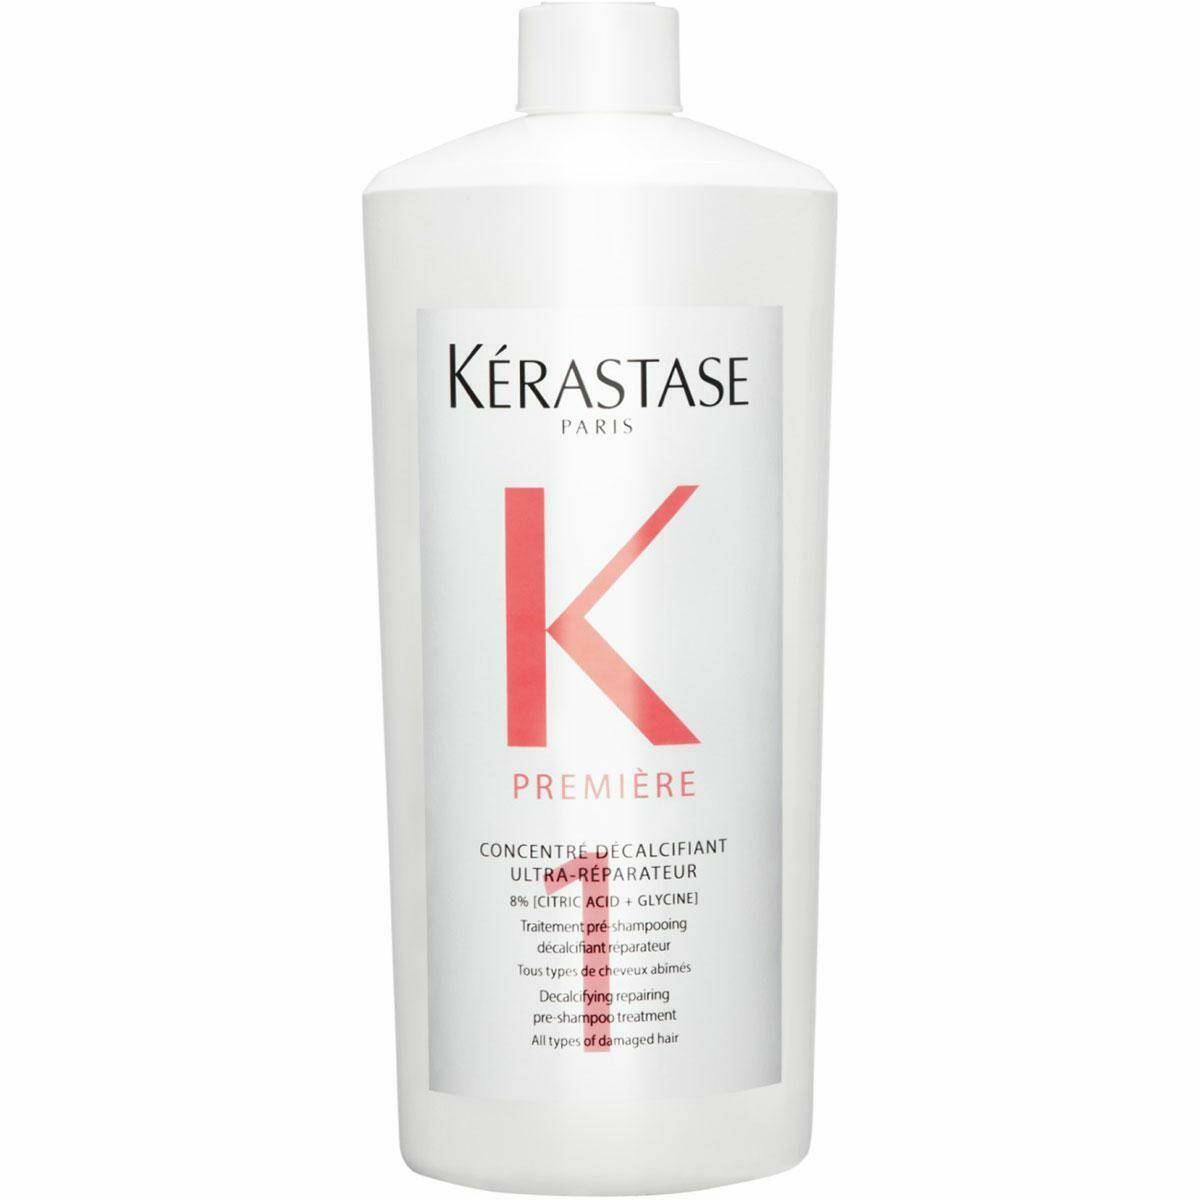 Kerastase Premiere Ultra-naprawczy koncentrat dekalcyfikujący włosy przed kąpielą szamponem 1000ml